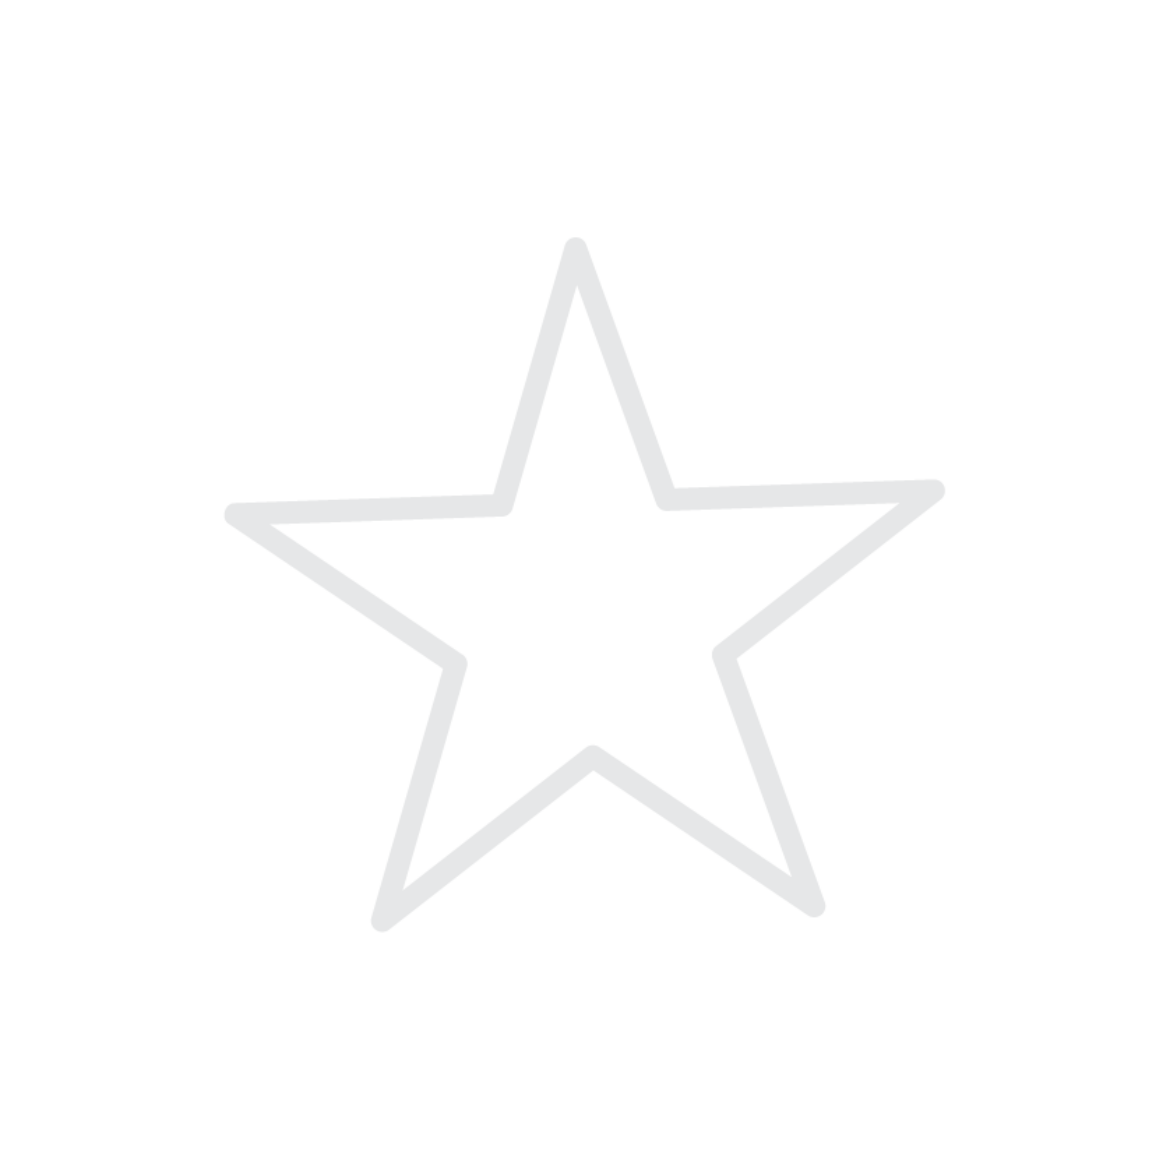 Le-estrella - Circle Clipart (1170x1170), Png Download